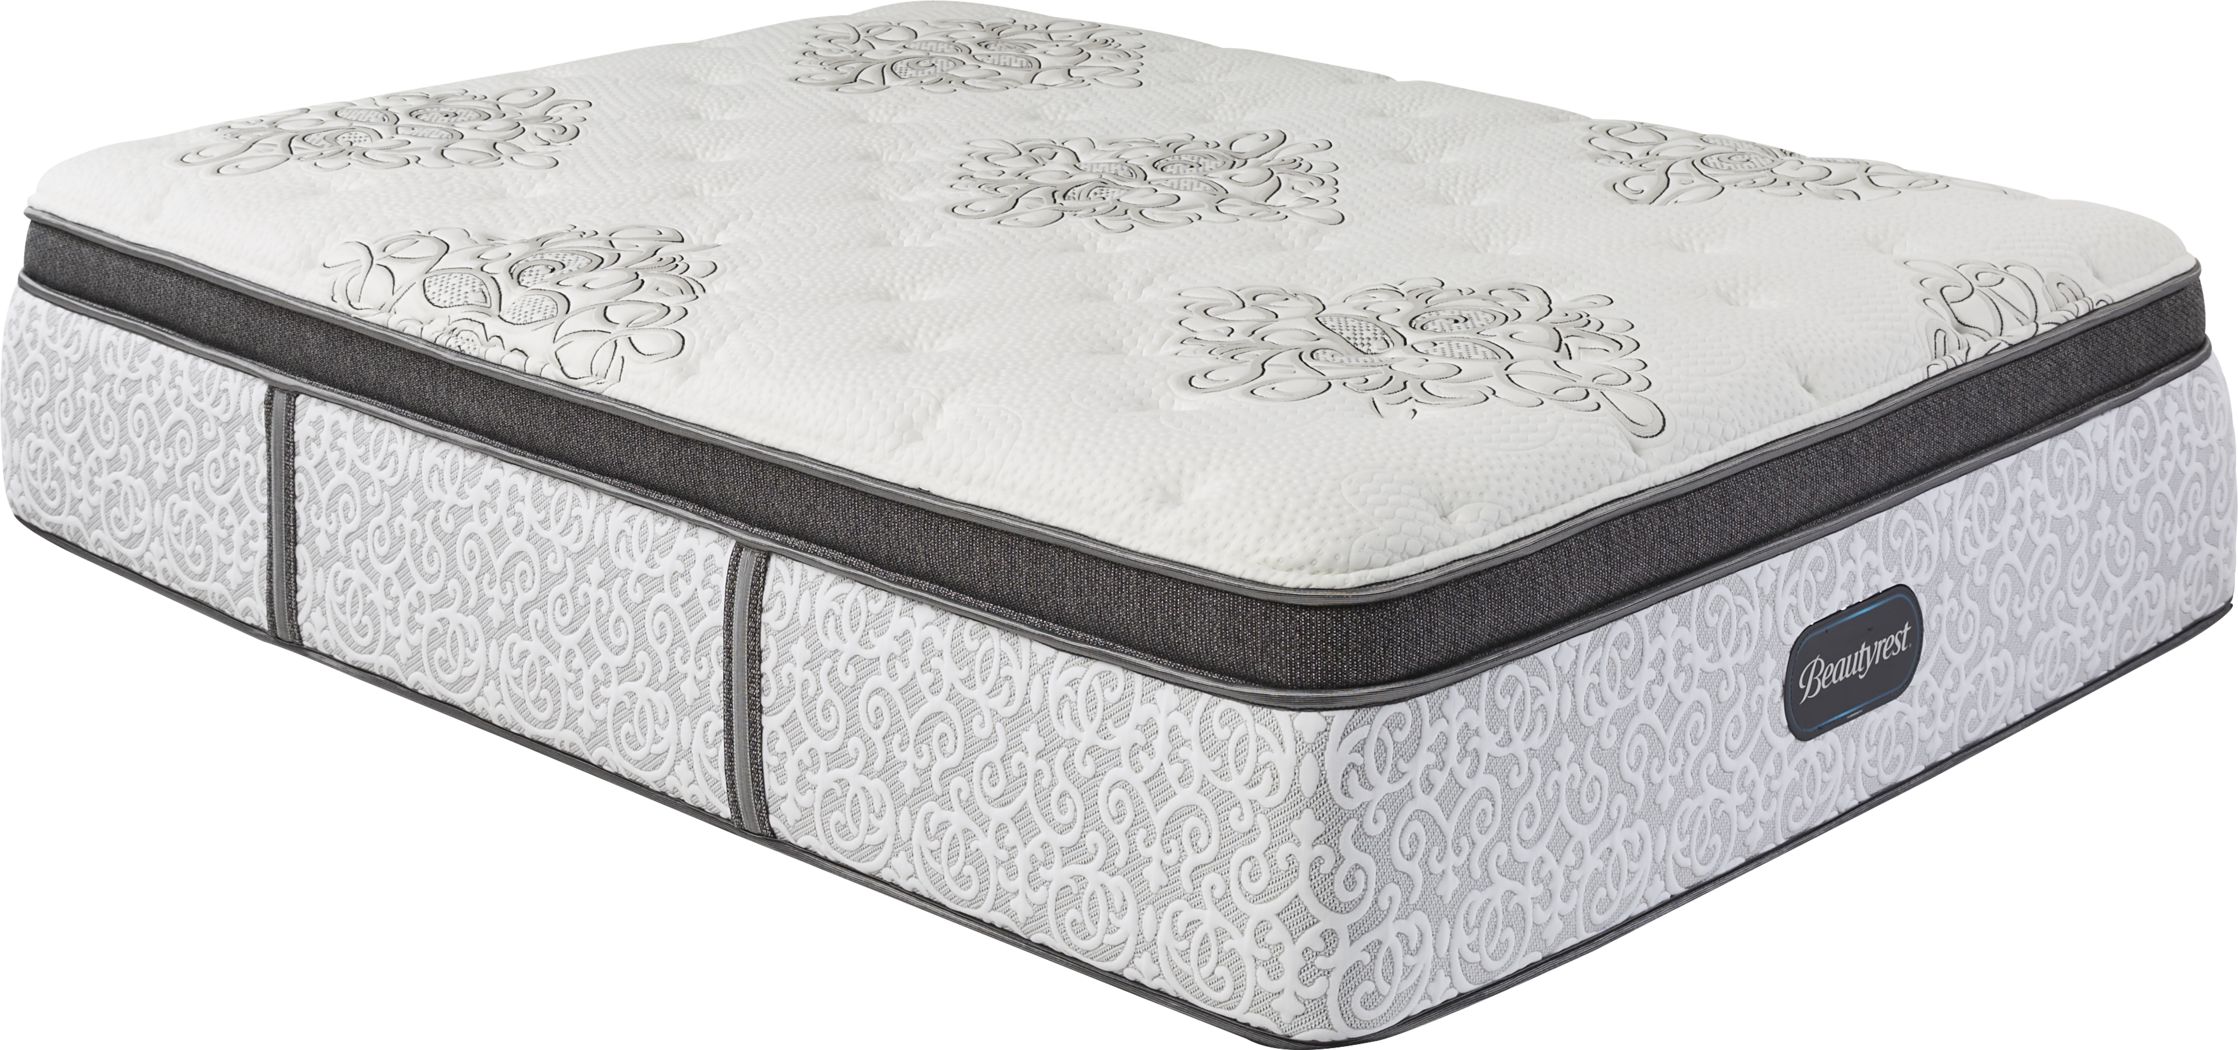 beautyrest legend firm mattress reviews